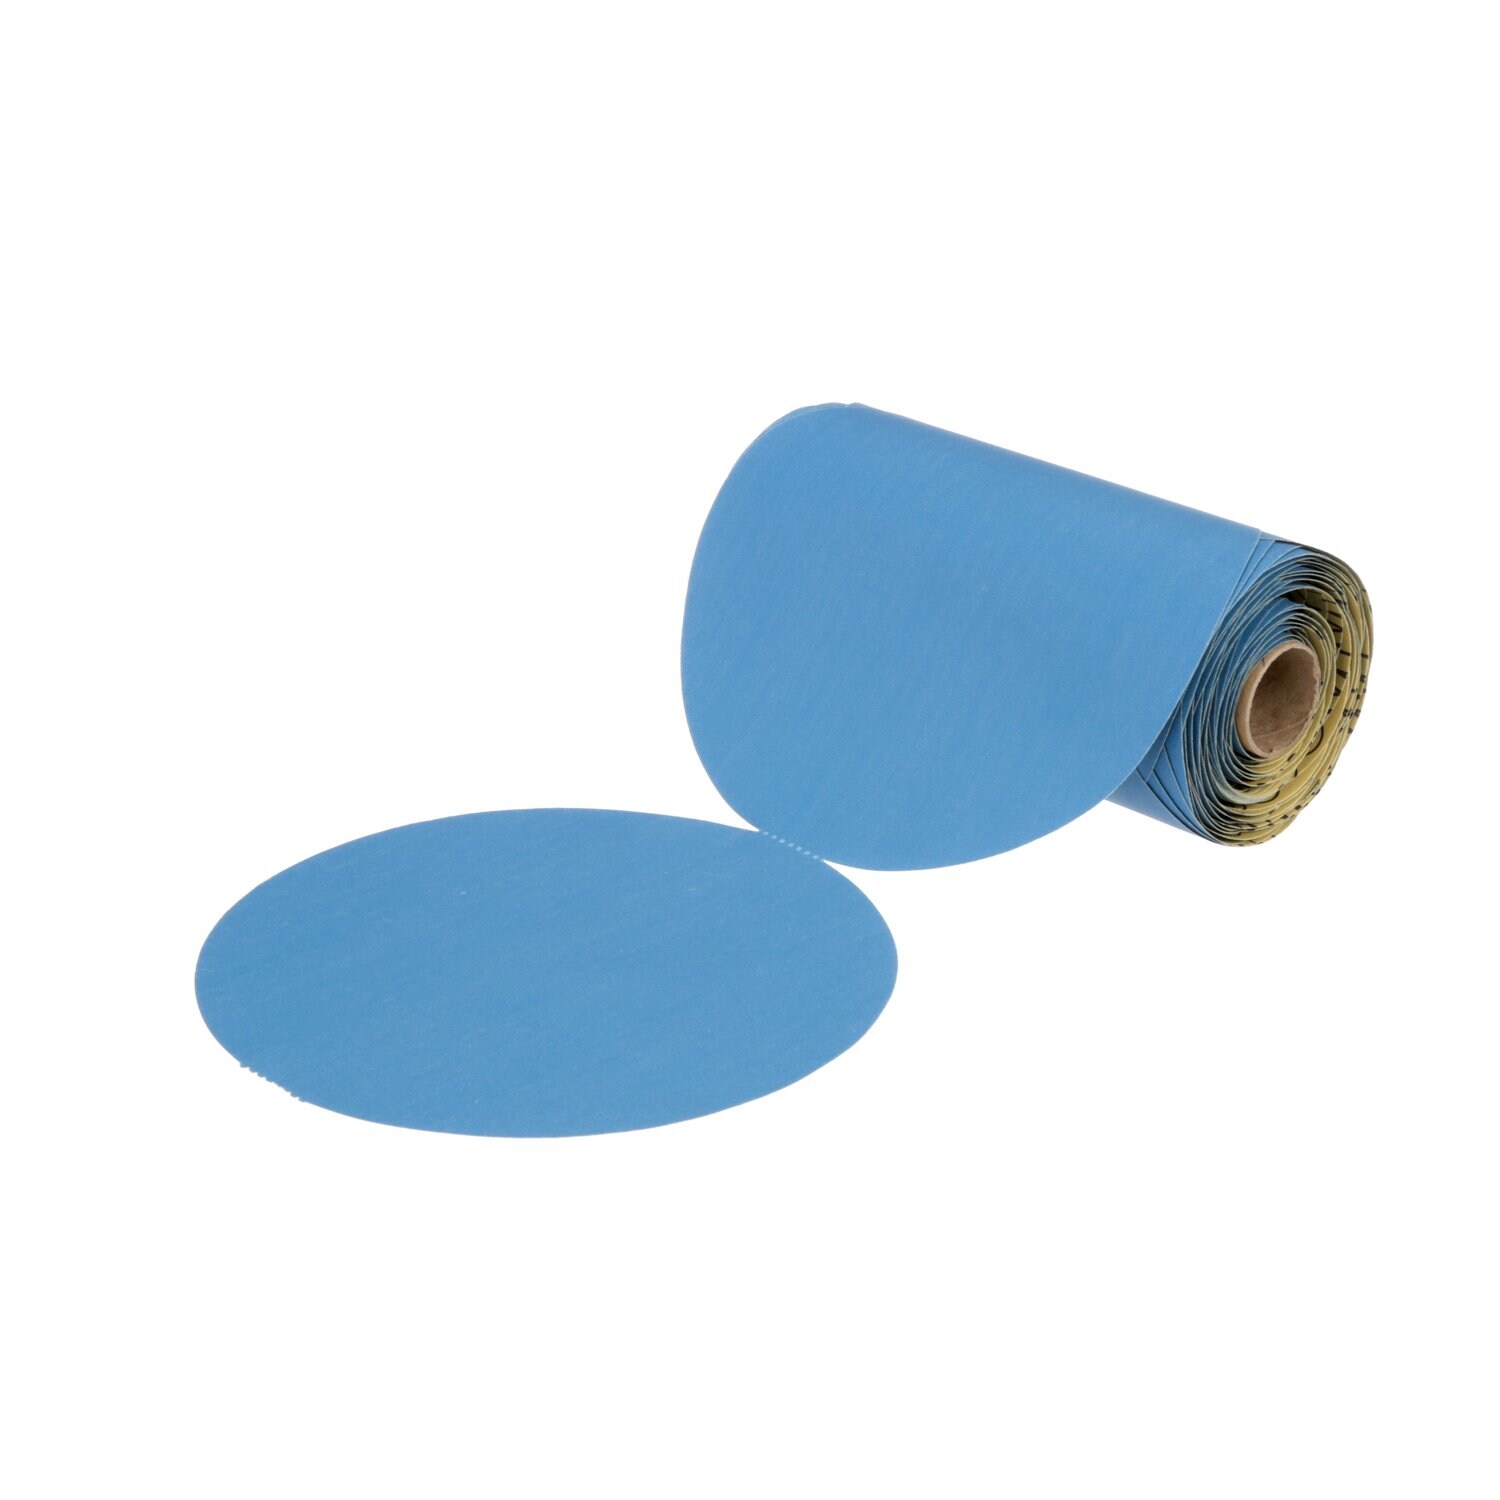 7100098194 - 3M Stikit Blue Abrasive Disc Roll, 36211, 6 in, 400 grade, 100 discs
per roll, 5 rolls per case